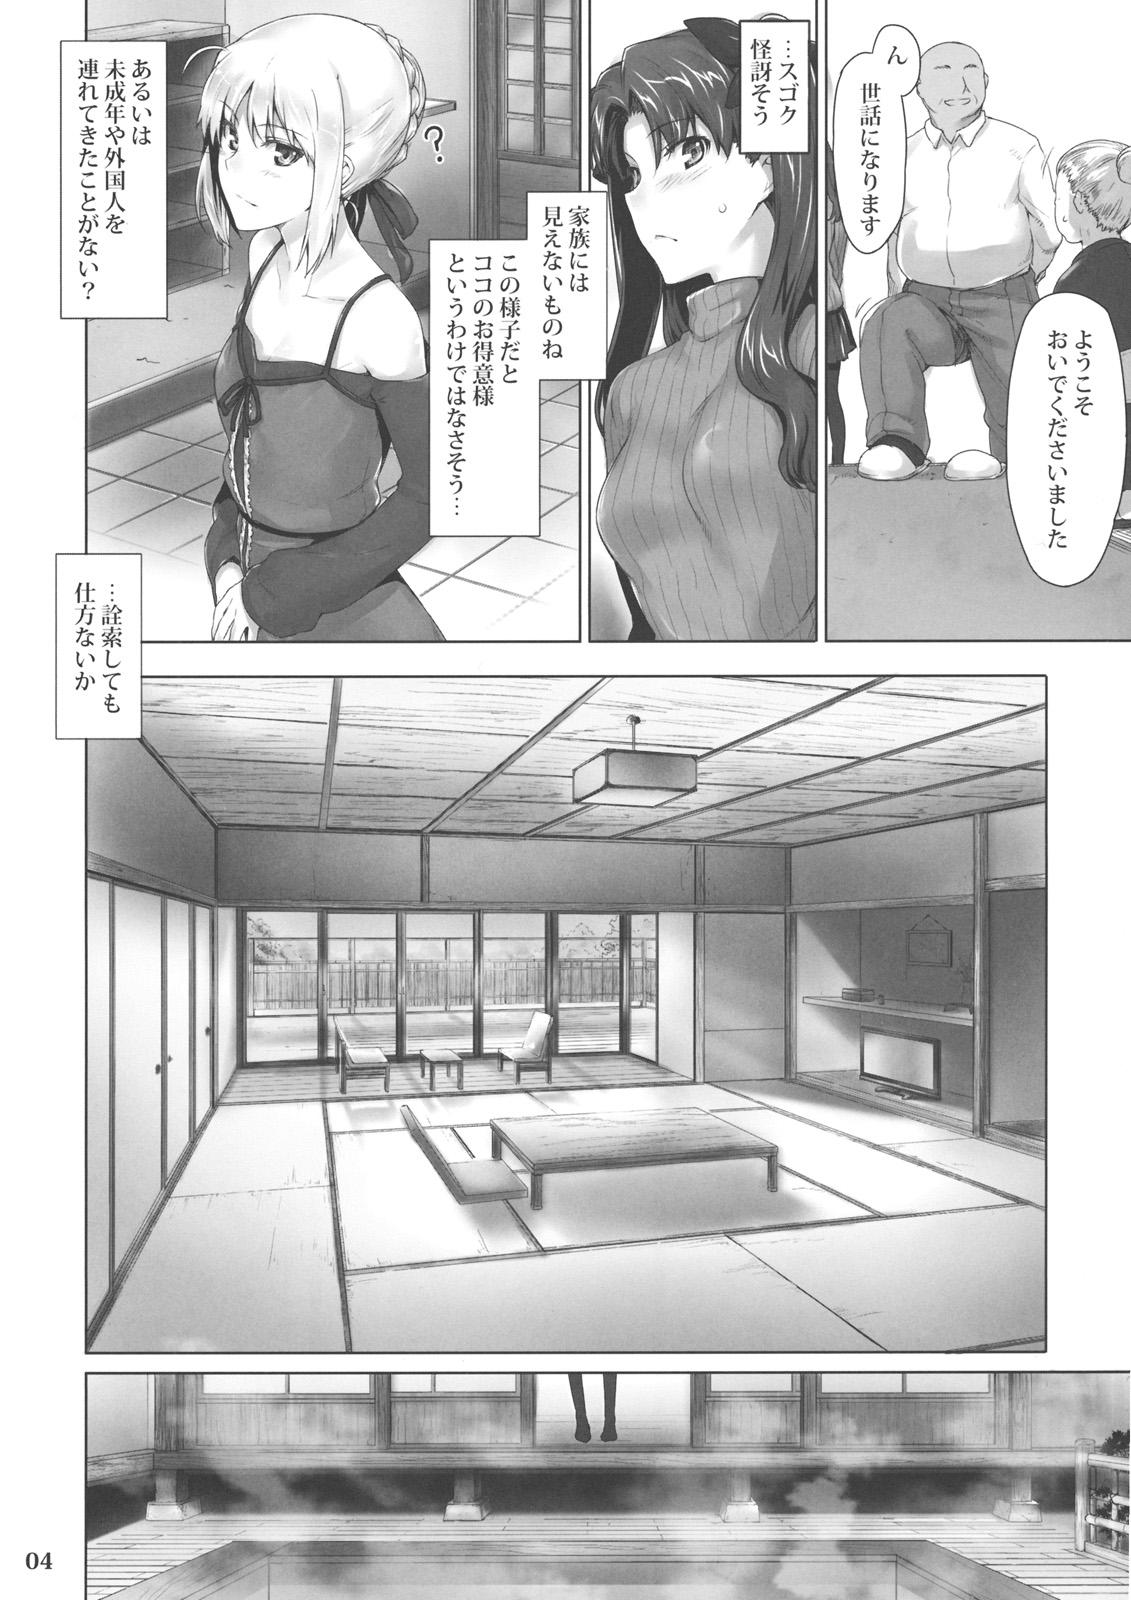 Outdoor Tosaka-ke no Kakei Jijou 8 - Fate stay night Stepsis - Page 3